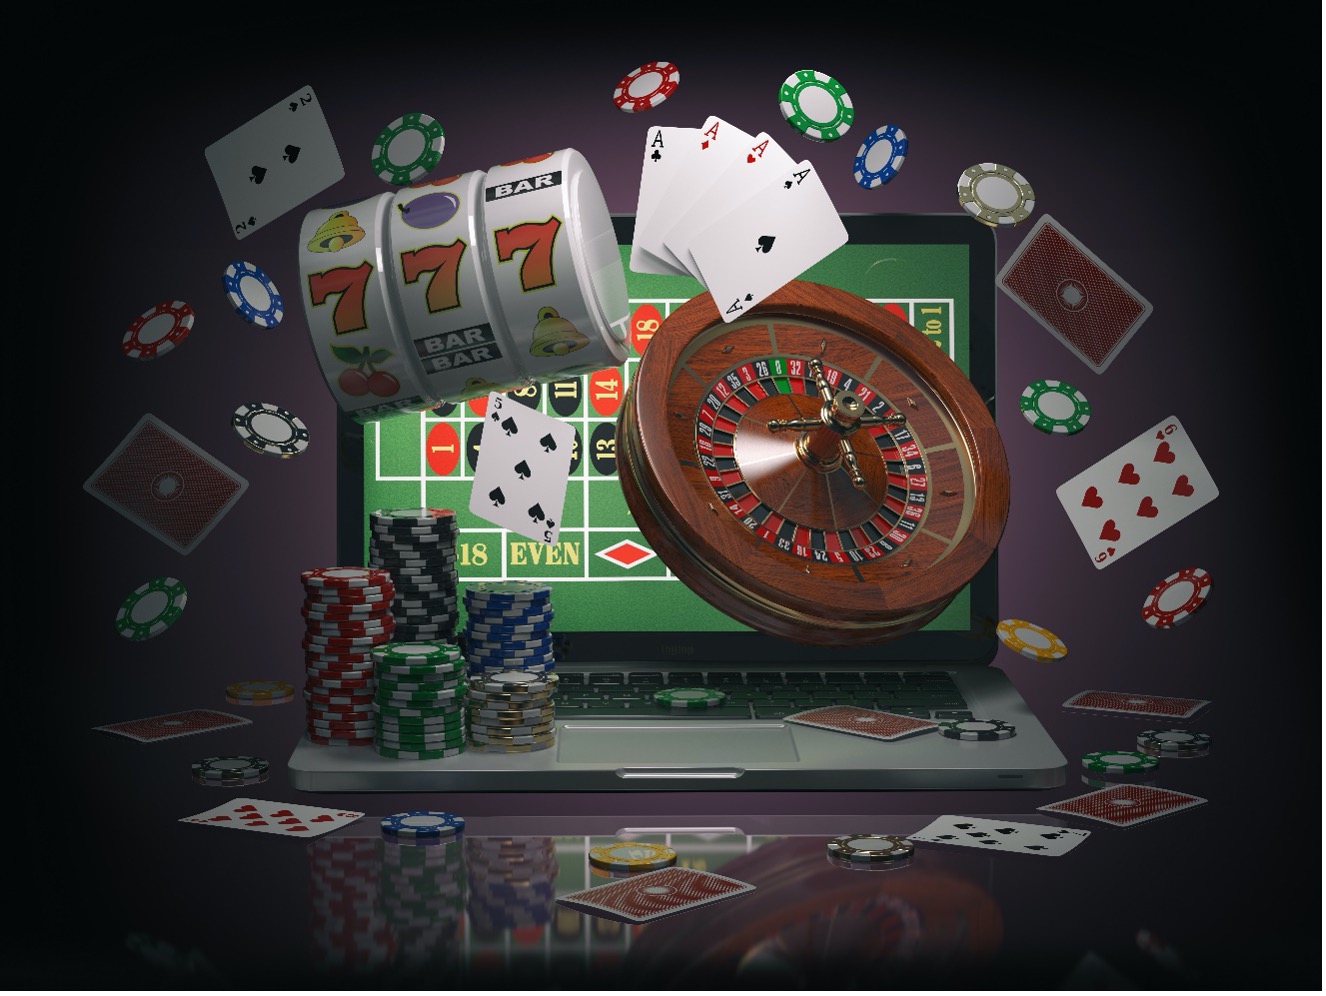 Você consegue realmente encontrar www.revistapazes.com/casinos-com-dealer-ao-vivo-uma-experiencia-inesquecivel/  na Web?